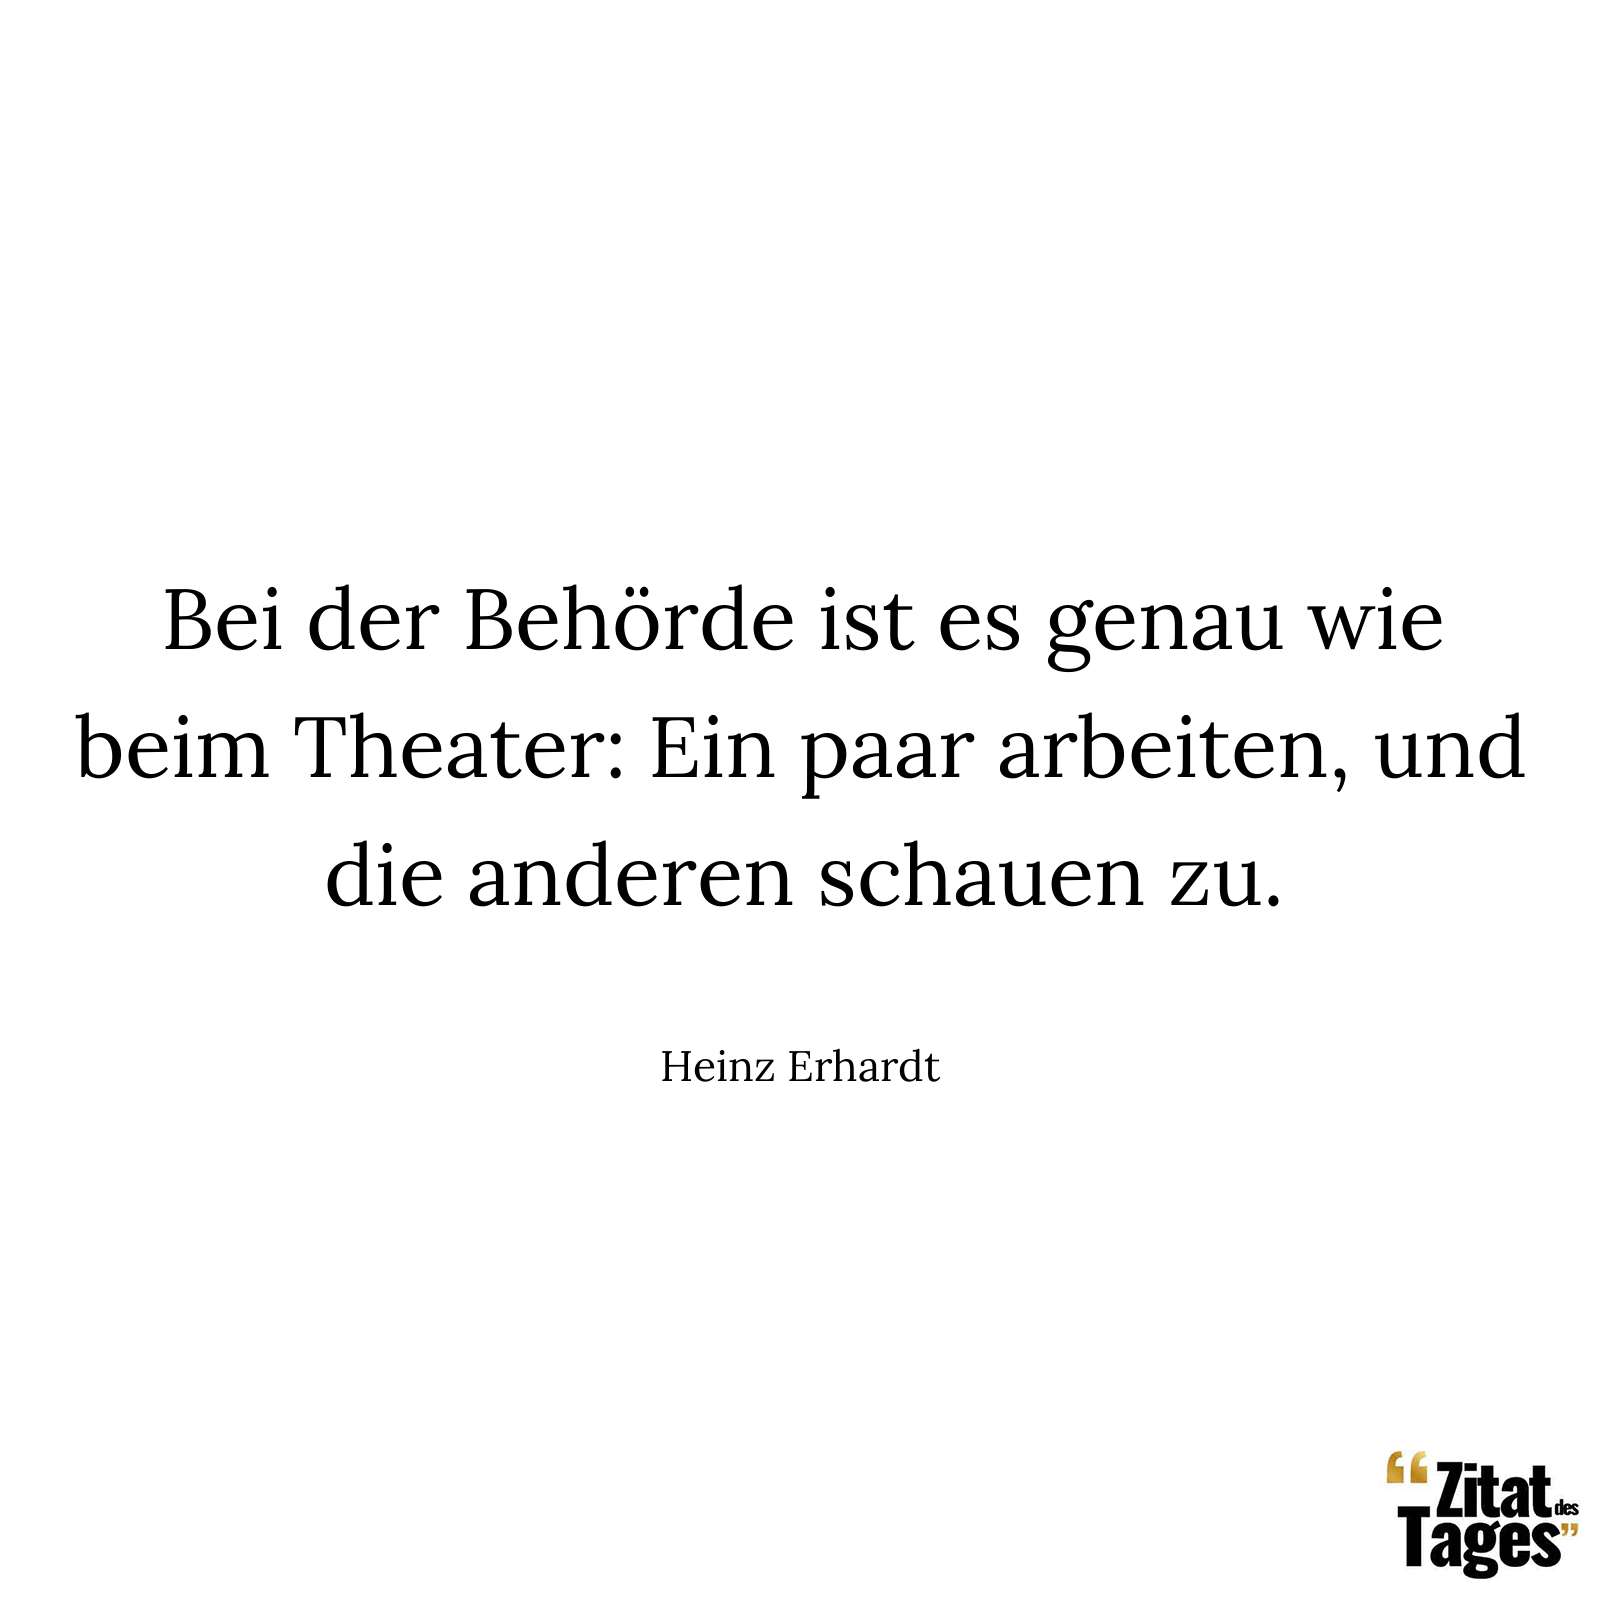 Bei der Behörde ist es genau wie beim Theater: Ein paar arbeiten, und die anderen schauen zu. - Heinz Erhardt